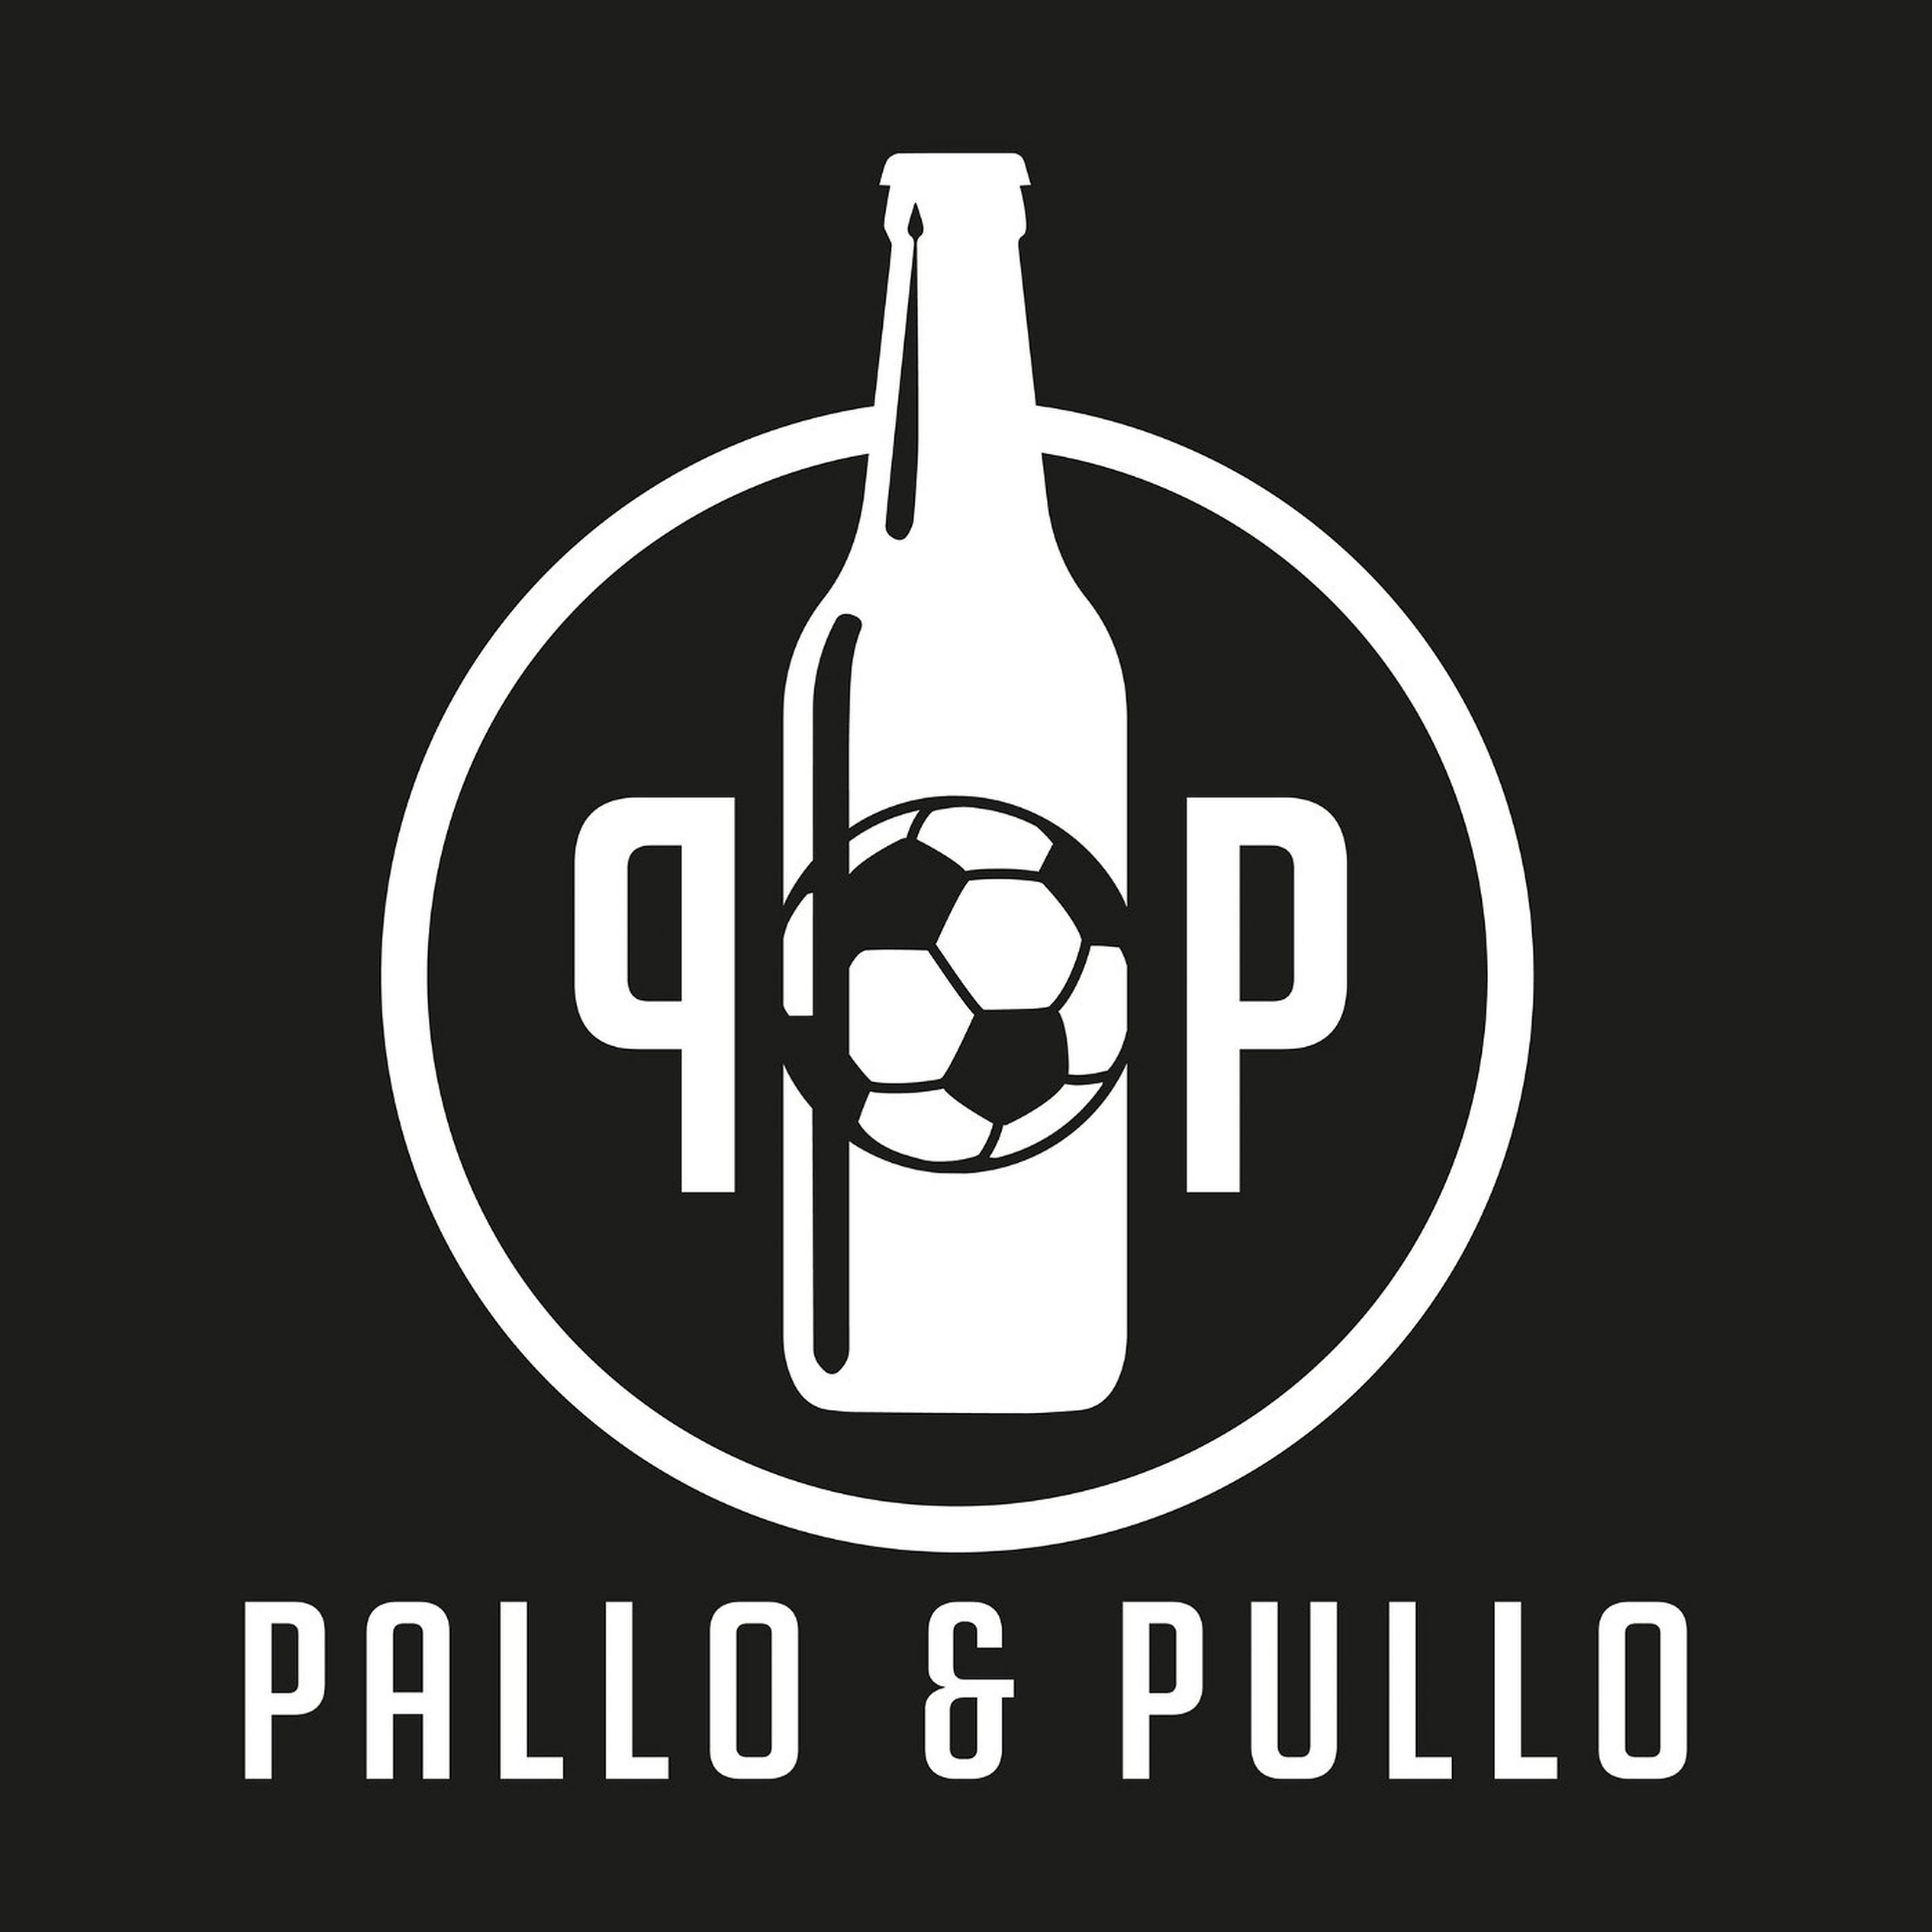 PALLO & PULLO